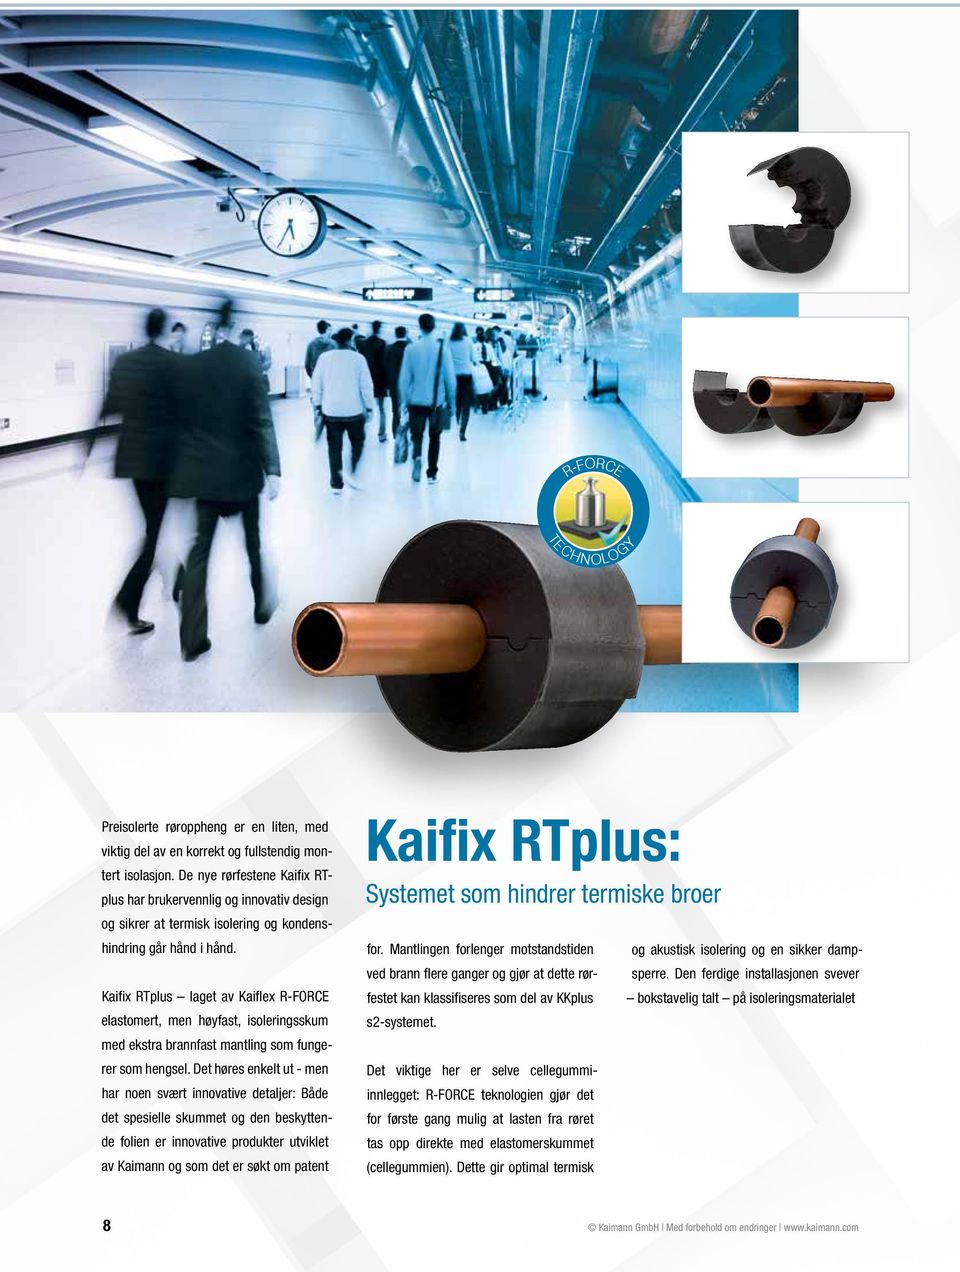 Kaifix RTplus laget av Kaiflex R-FORCE elastomert, men hyfast, isoleringsskum med ekstra brannfast mantling som fungerer som hengsel.